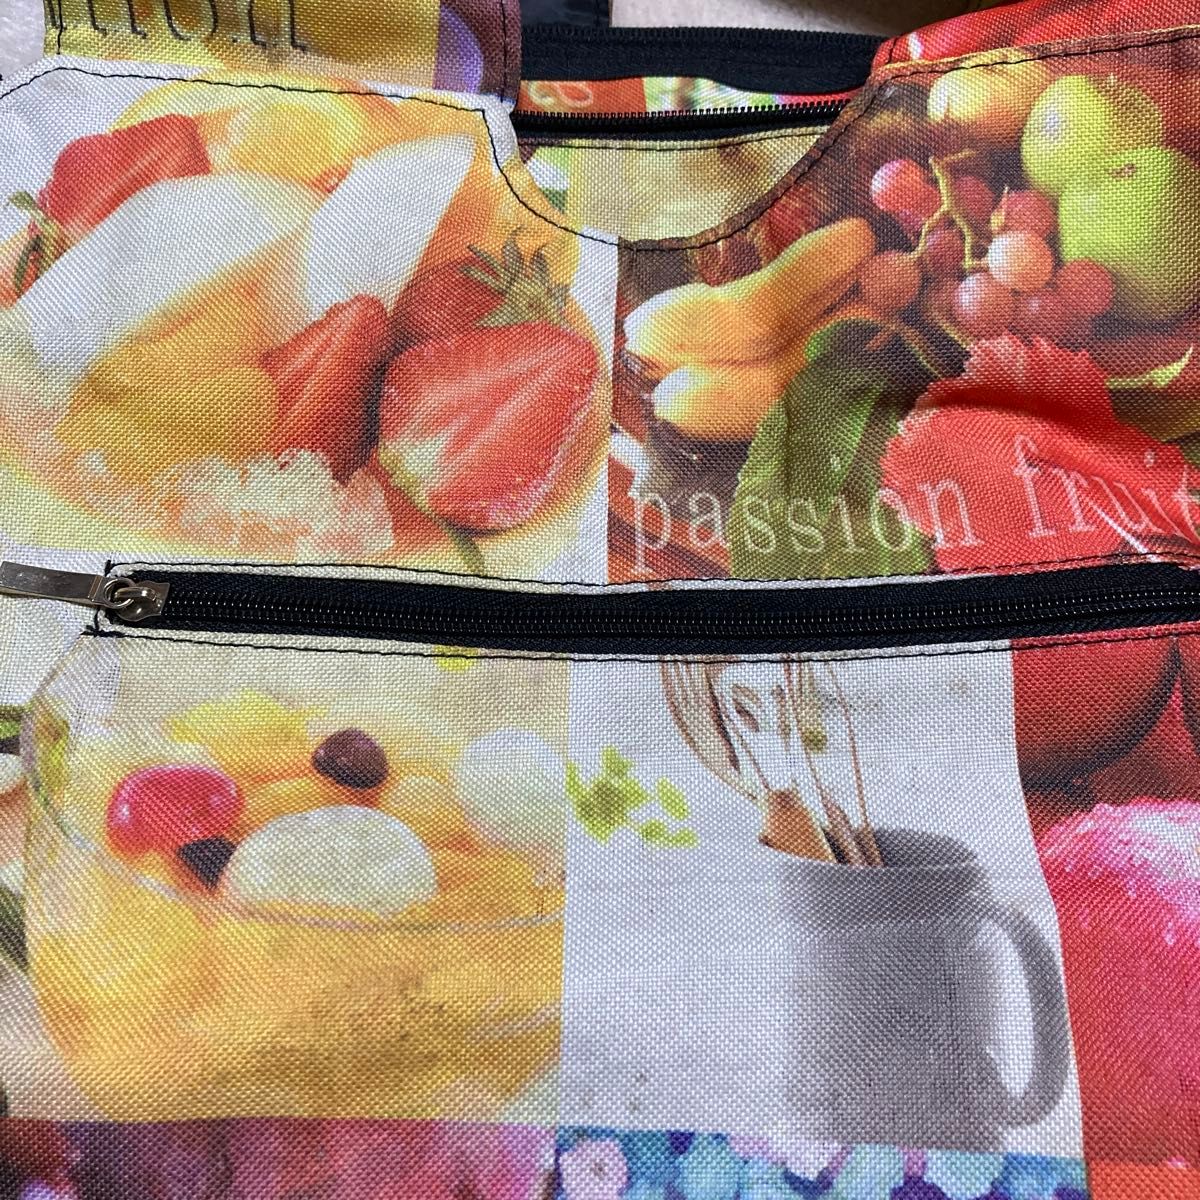 鮮やかカラフルのフルーツ柄の大きなバッグ